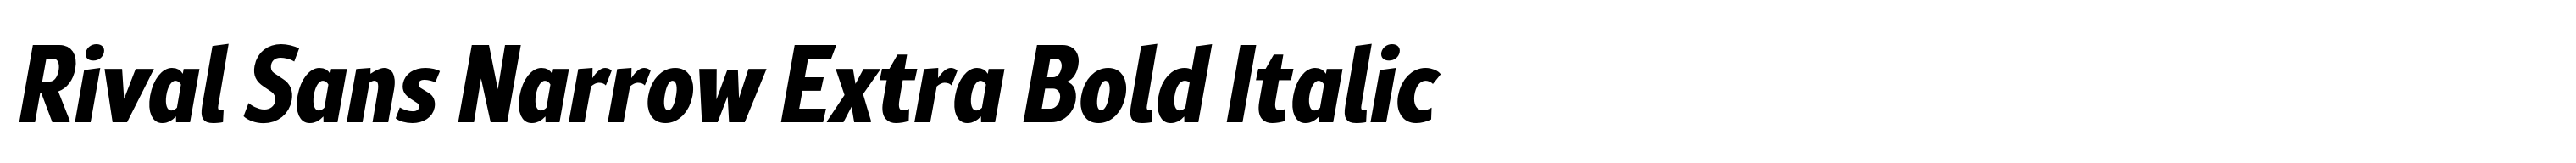 Rival Sans Narrow Extra Bold Italic